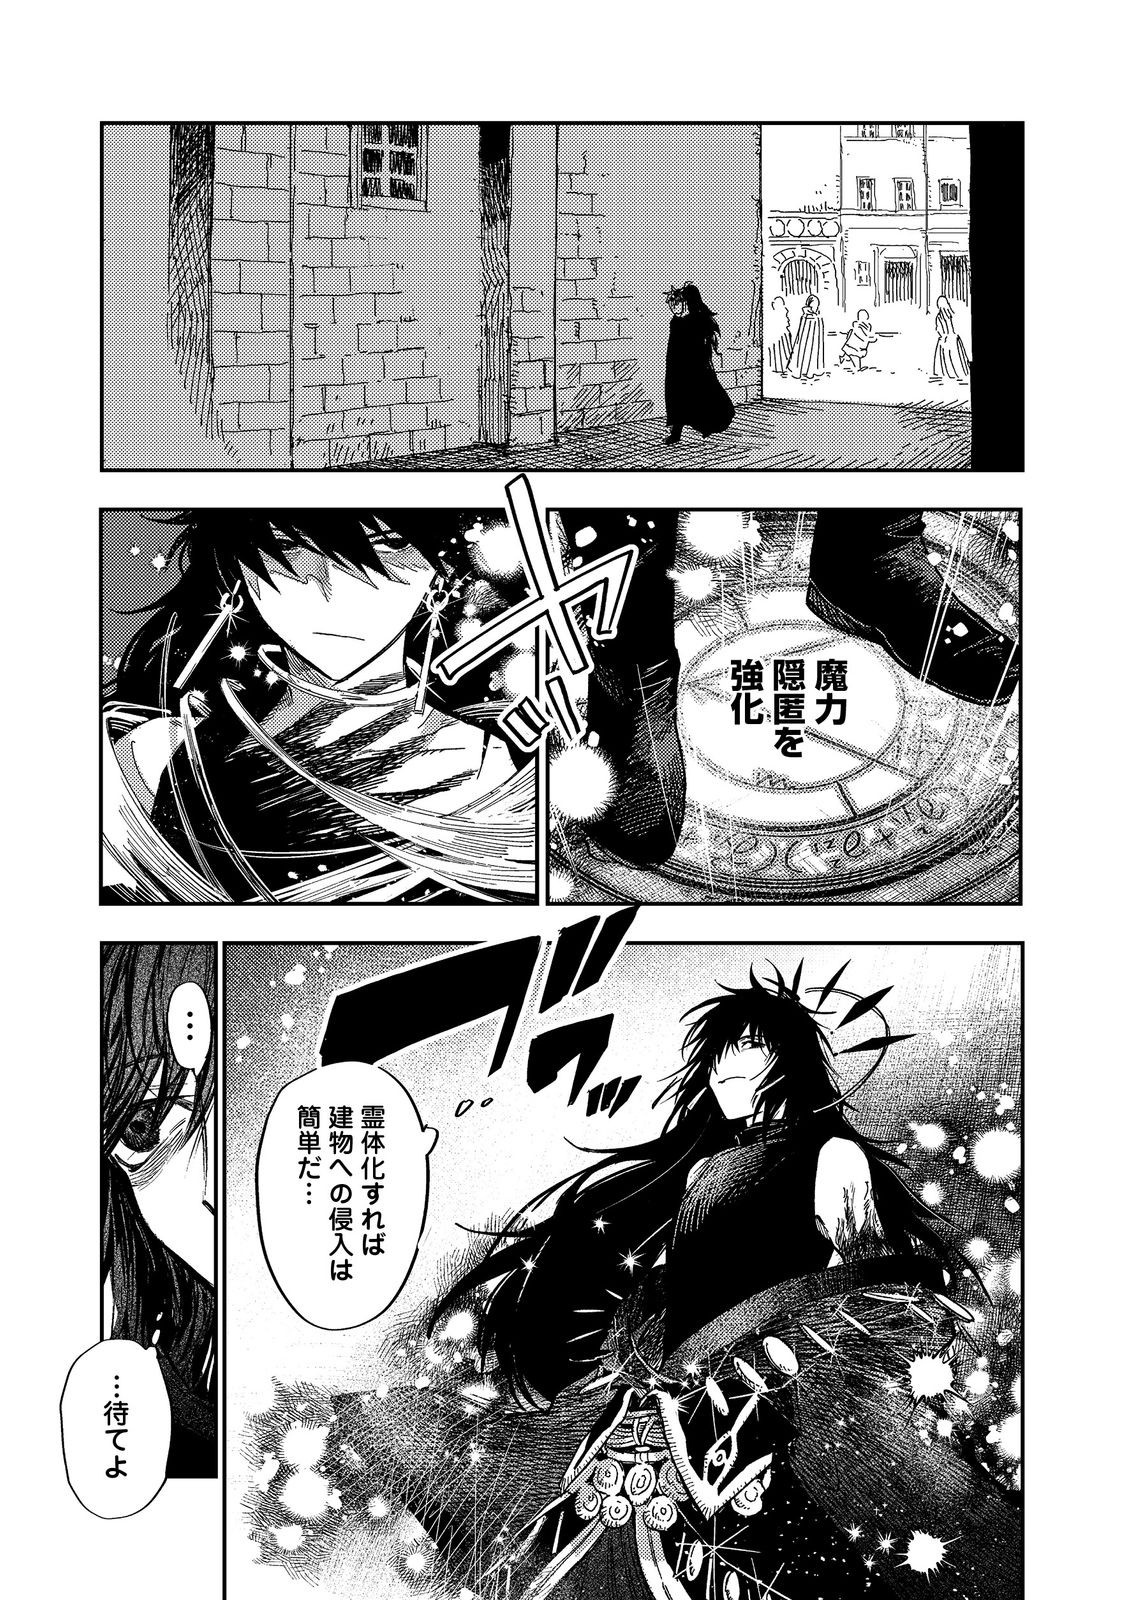 Meiou-sama ga Tooru no desu yo! - Chapter 14 - Page 3